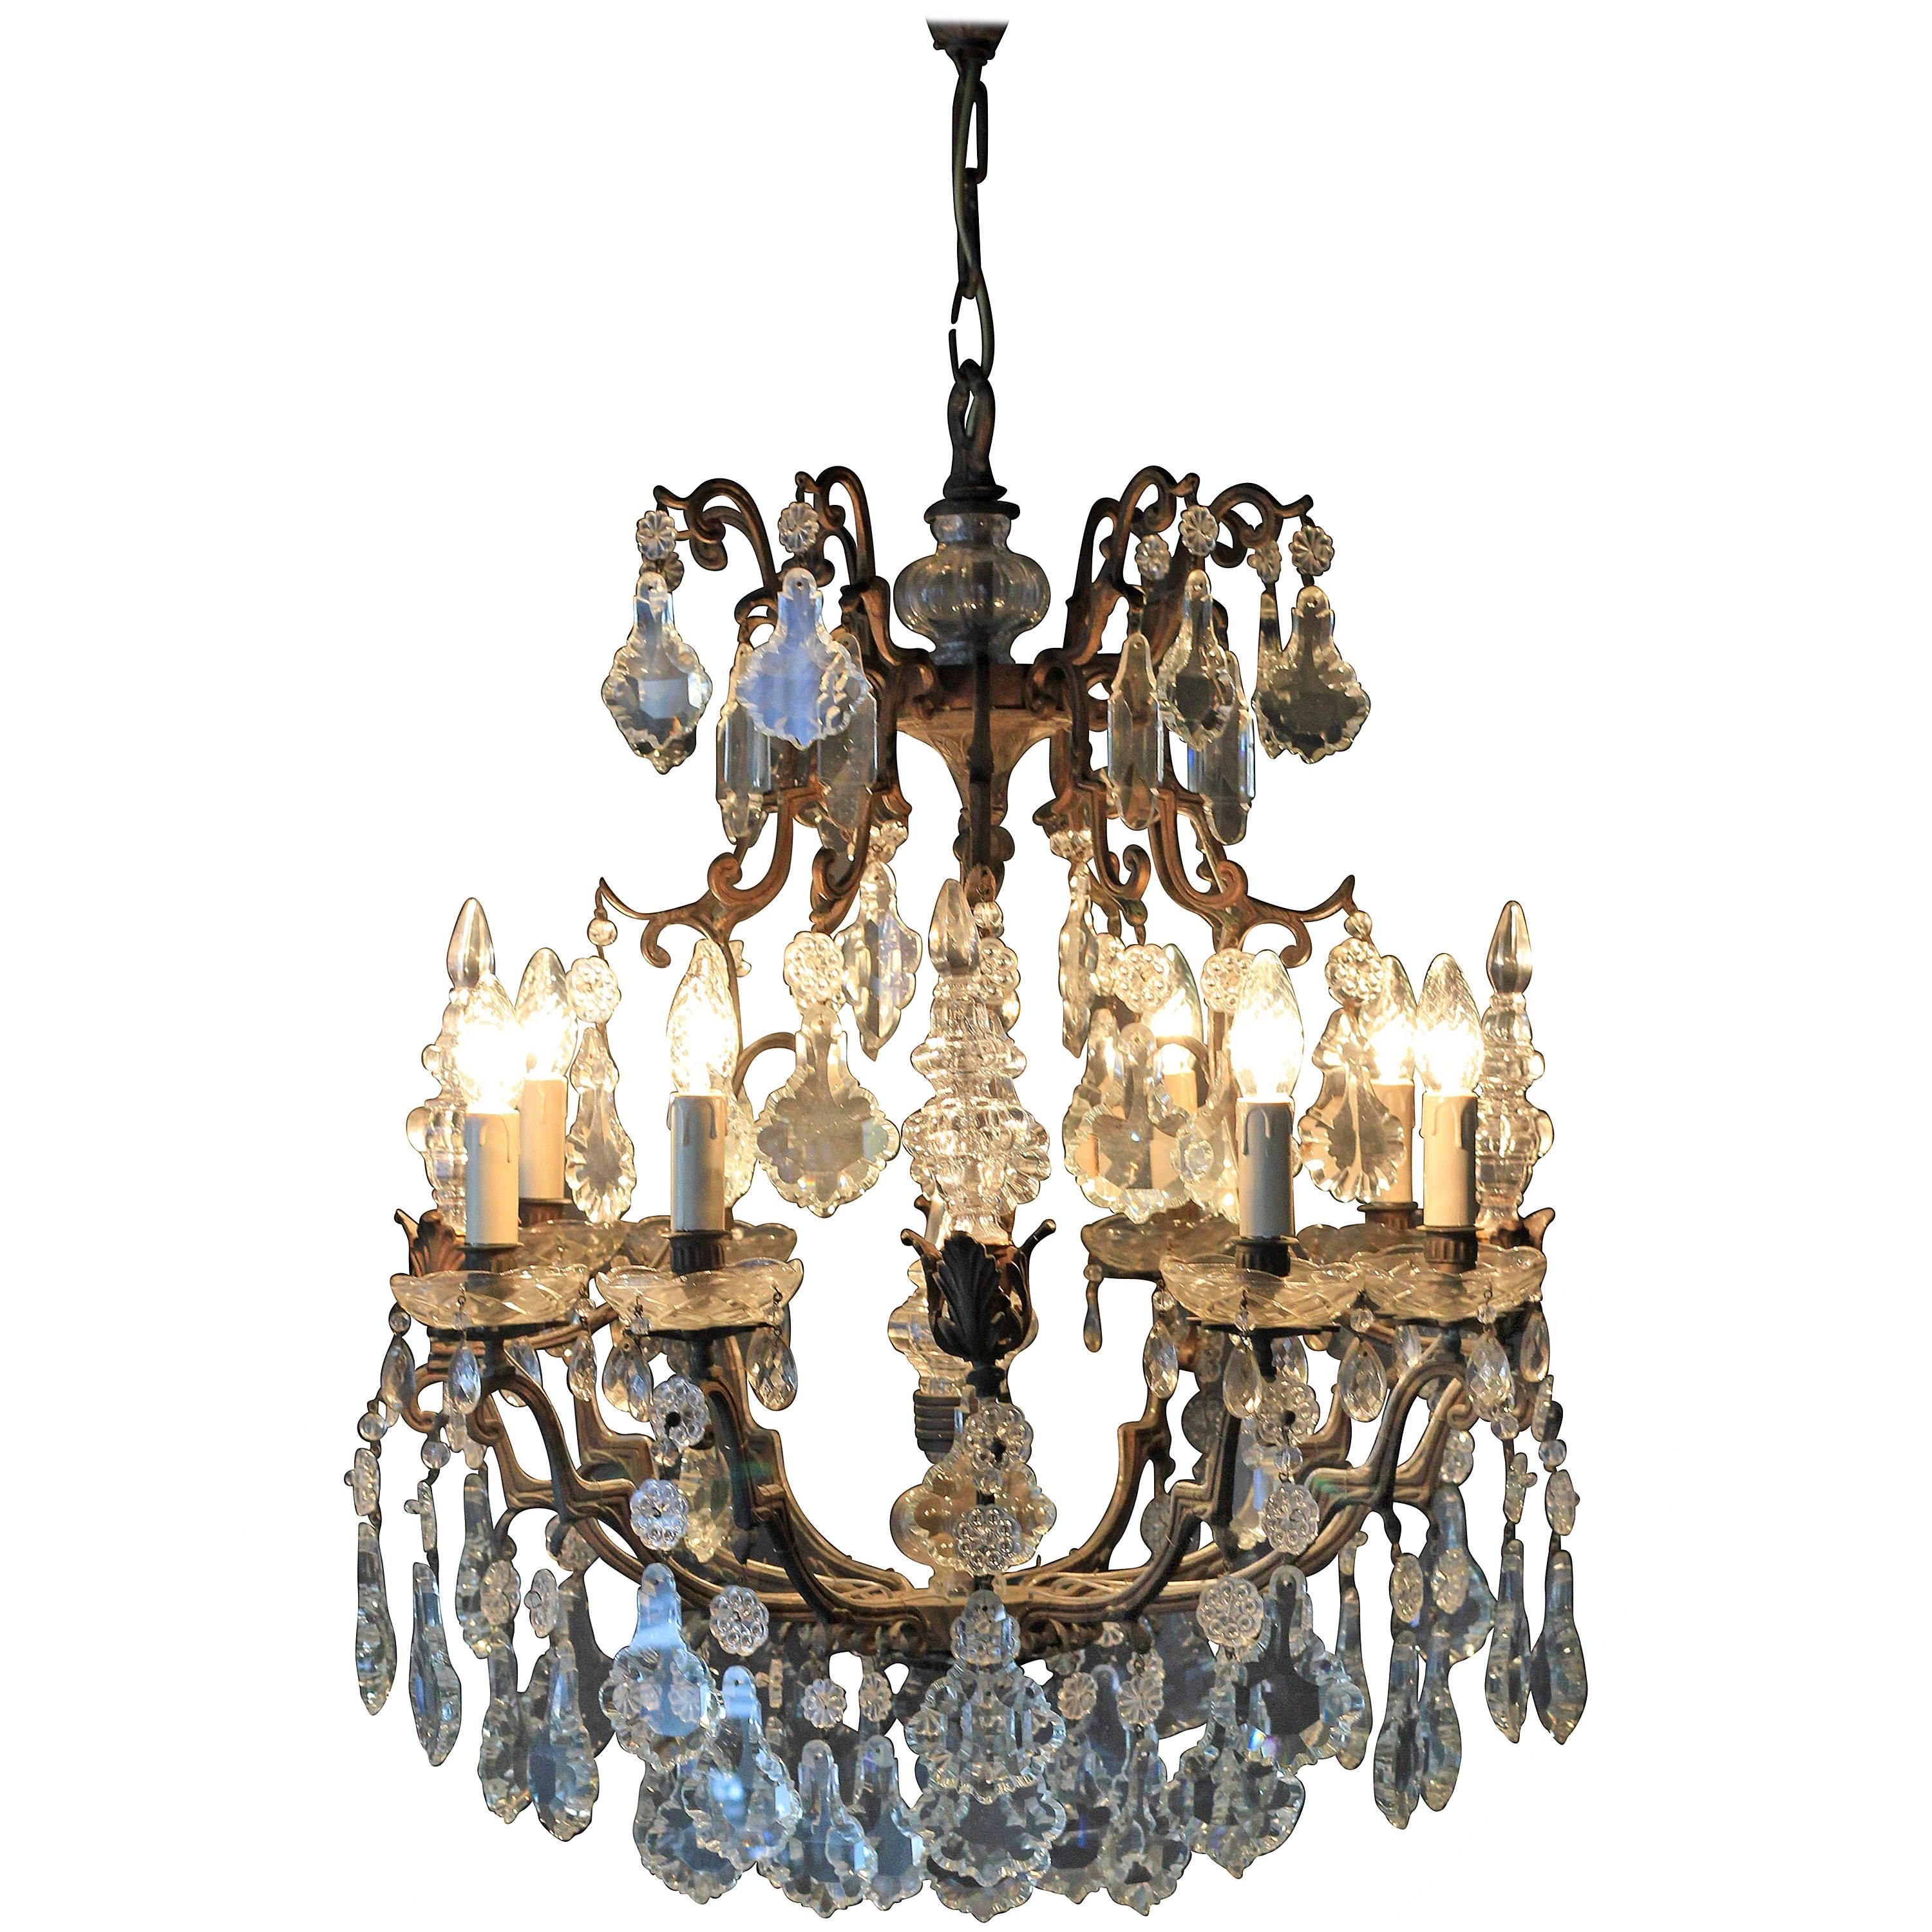 Fine Rarity Crystal Chandelier 1920 Lustre Antique Ceiling Lamp Art Nouveau WoW